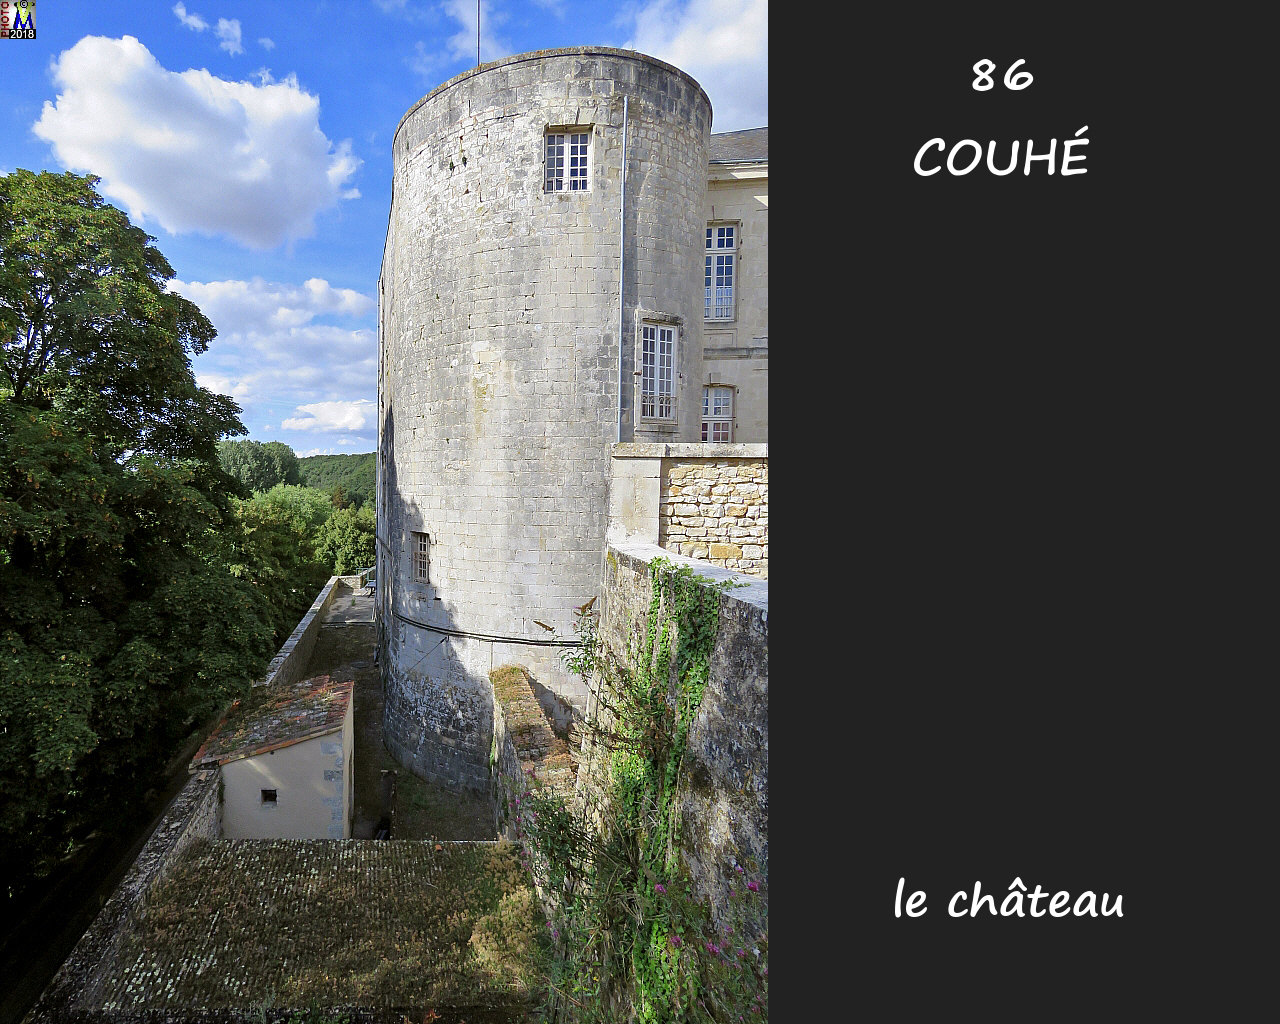 86COUHE_chateau_1004.jpg